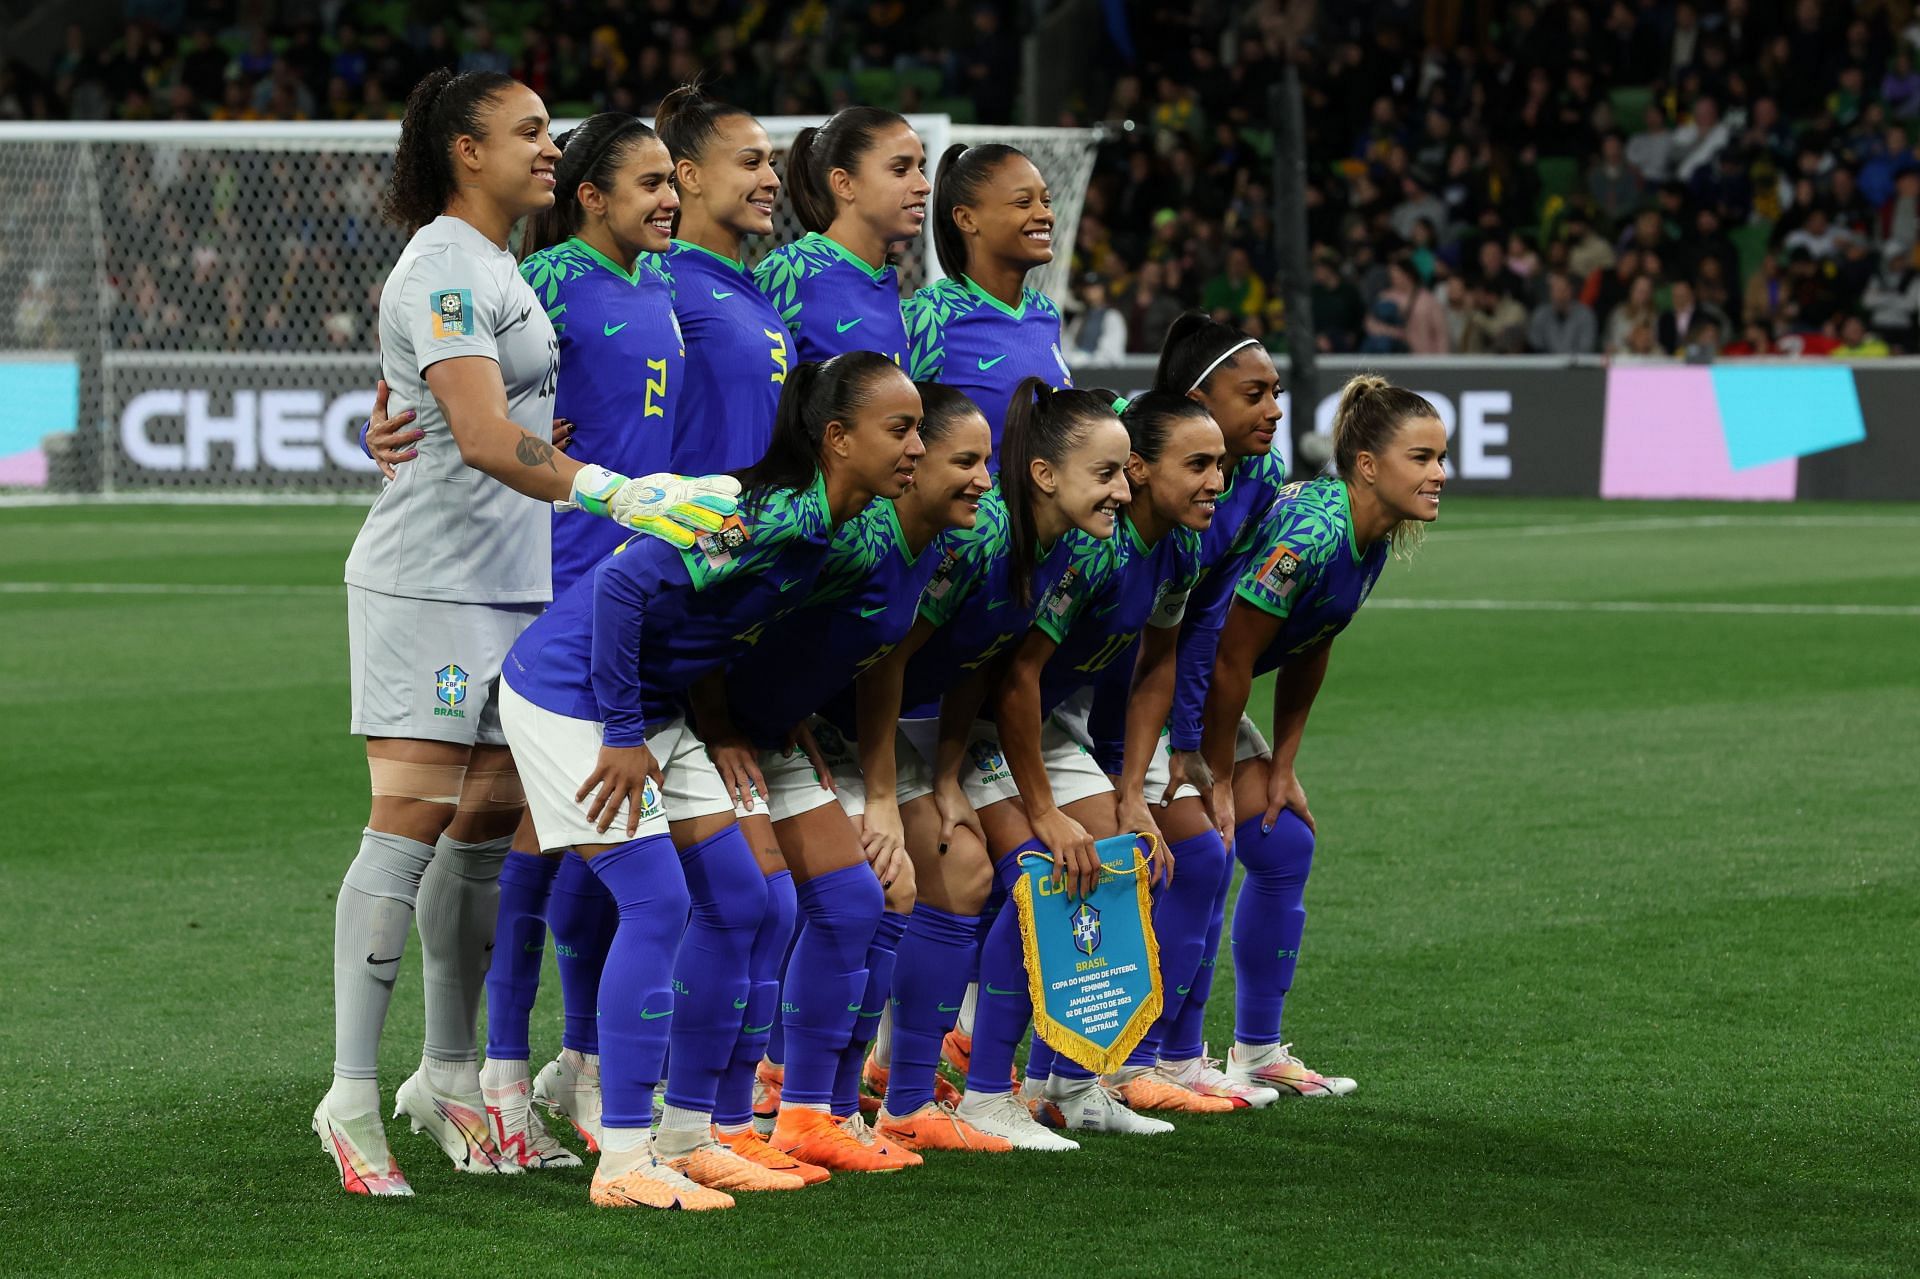 Jamaica v Brazil: Group F - FIFA Women